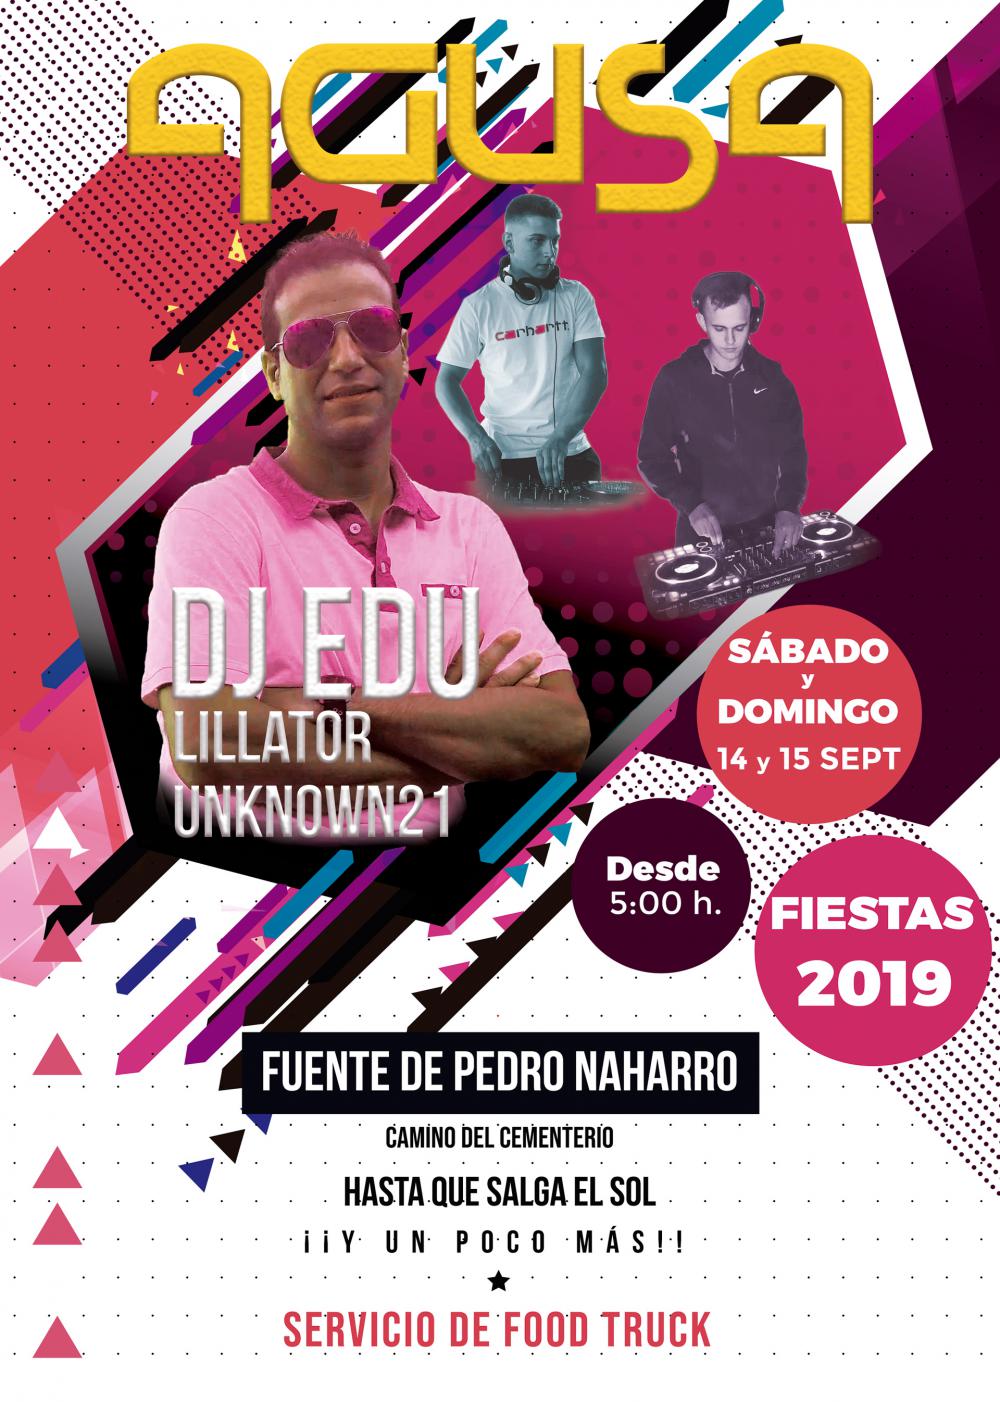 Cartel Festival Fuente de Pedro Naharro 2019